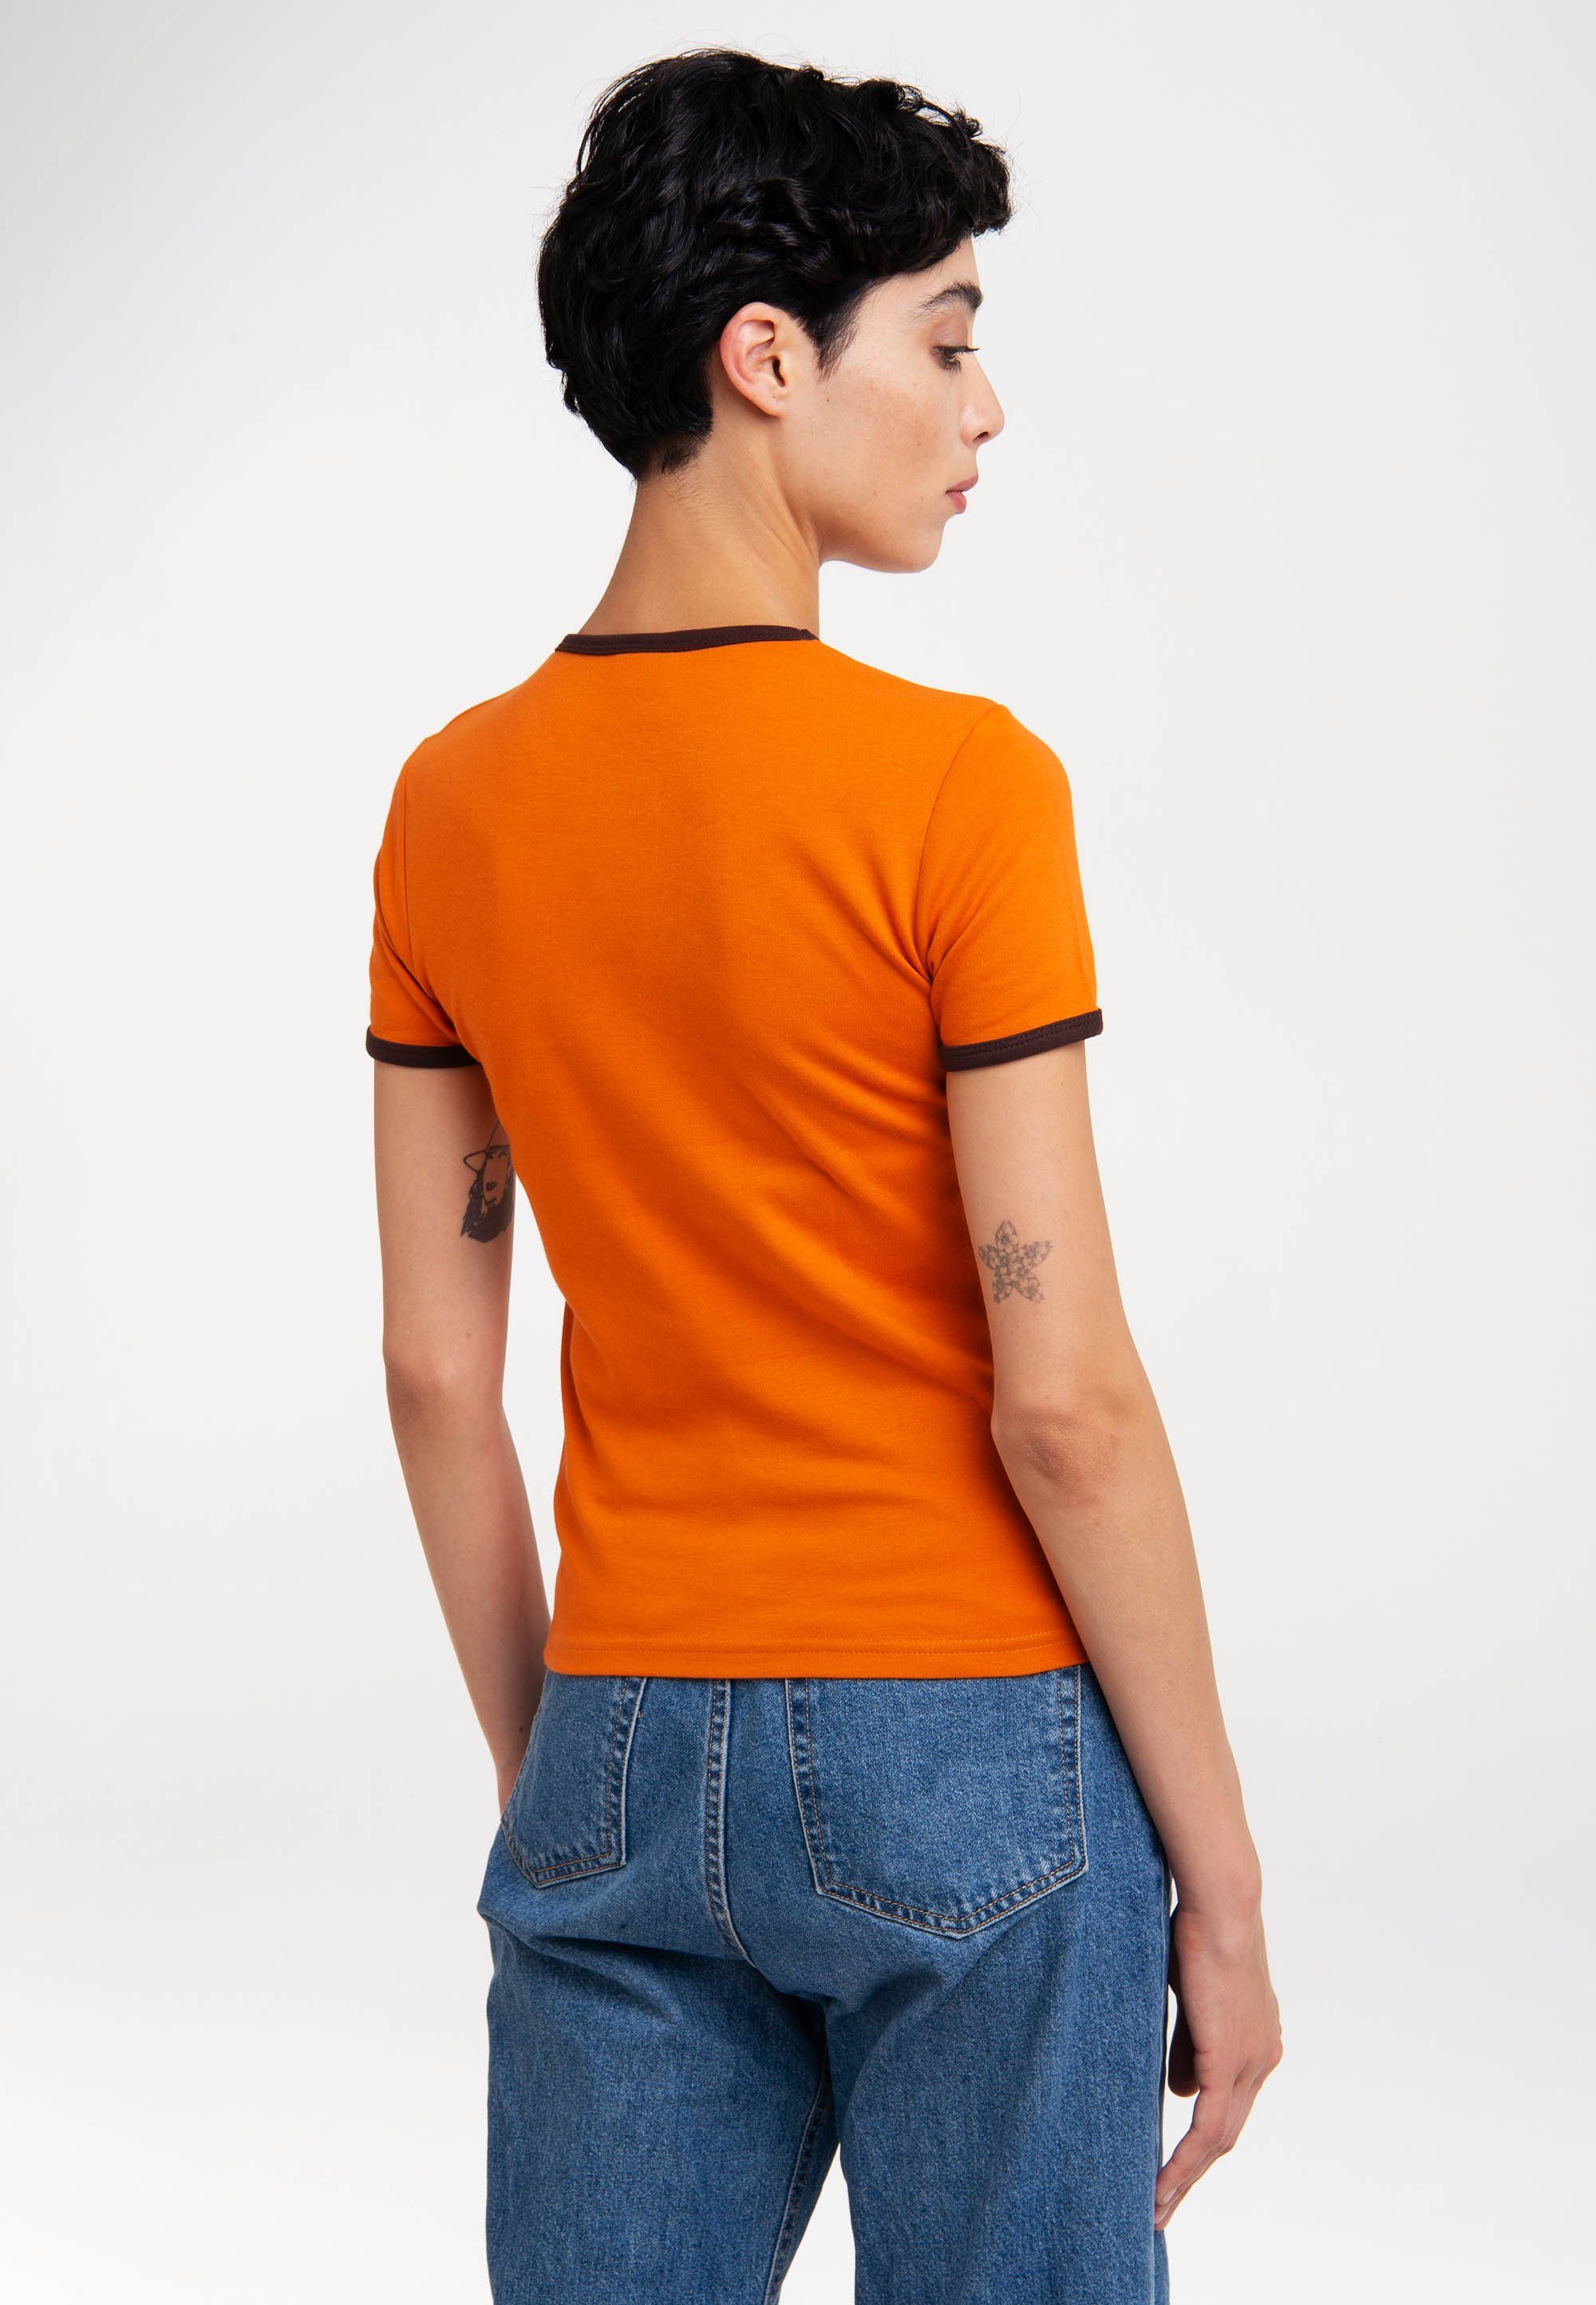 LOGOSHIRT T-Shirt Die Sendung mit - Maus Die mit lizenziertem Print orange-dunkelbraun Maus der